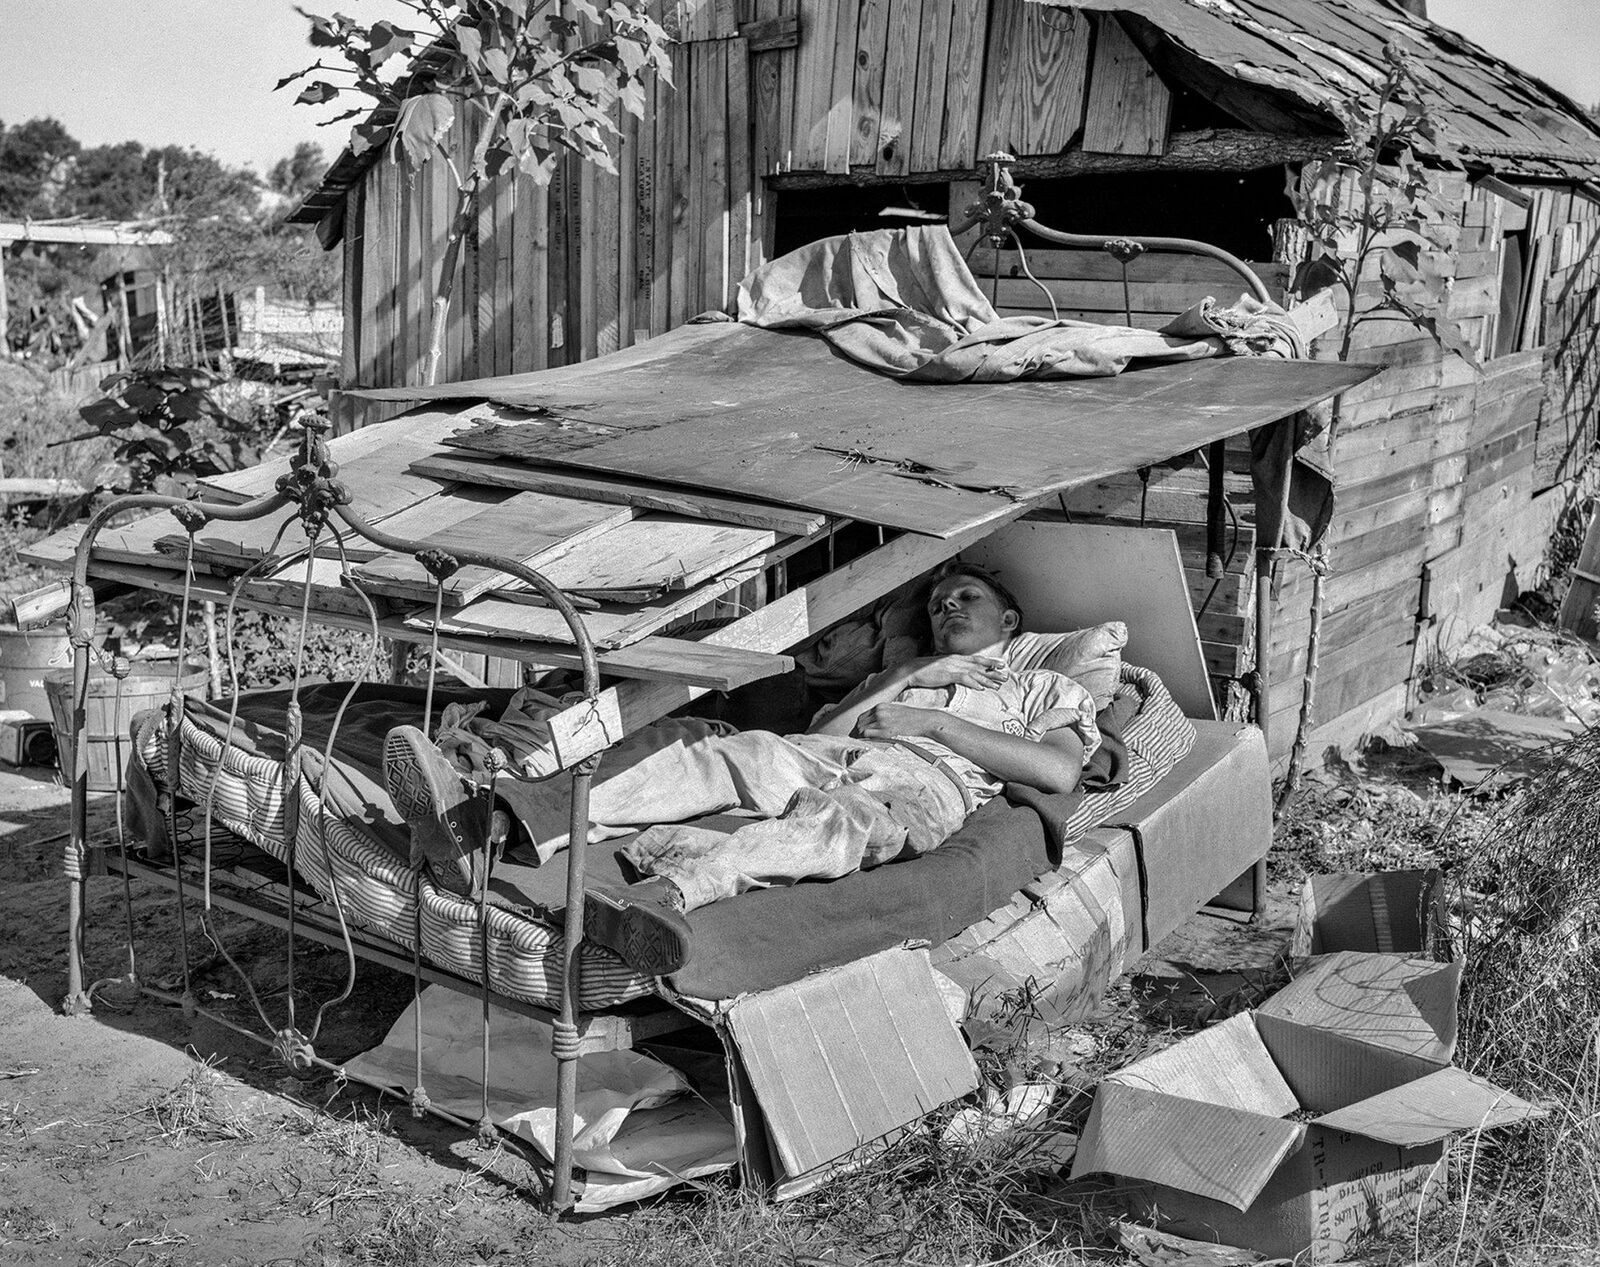 1939 DEPRESSION ERA SHELTER PHOTO  (173-f)